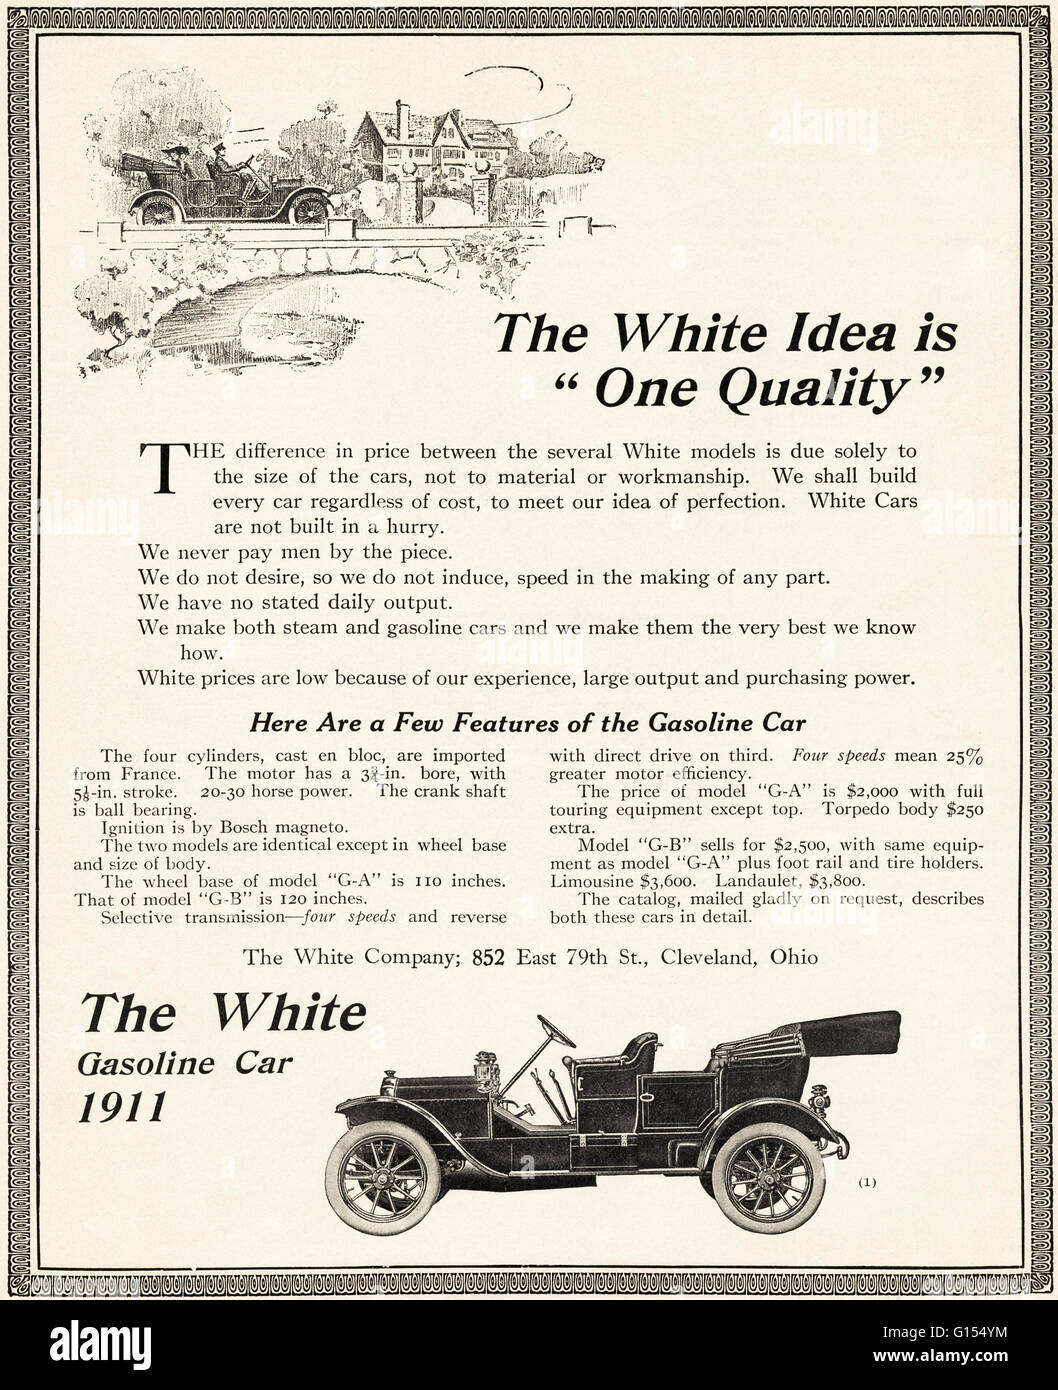 Original antiguo vintage revista americana anuncio desde la época eduardiana, data de 1910. Publicidad publicidad modelo 1911 nuevo coche de gasolina por la empresa blanco de Cleveland Ohio EE.UU Foto de stock